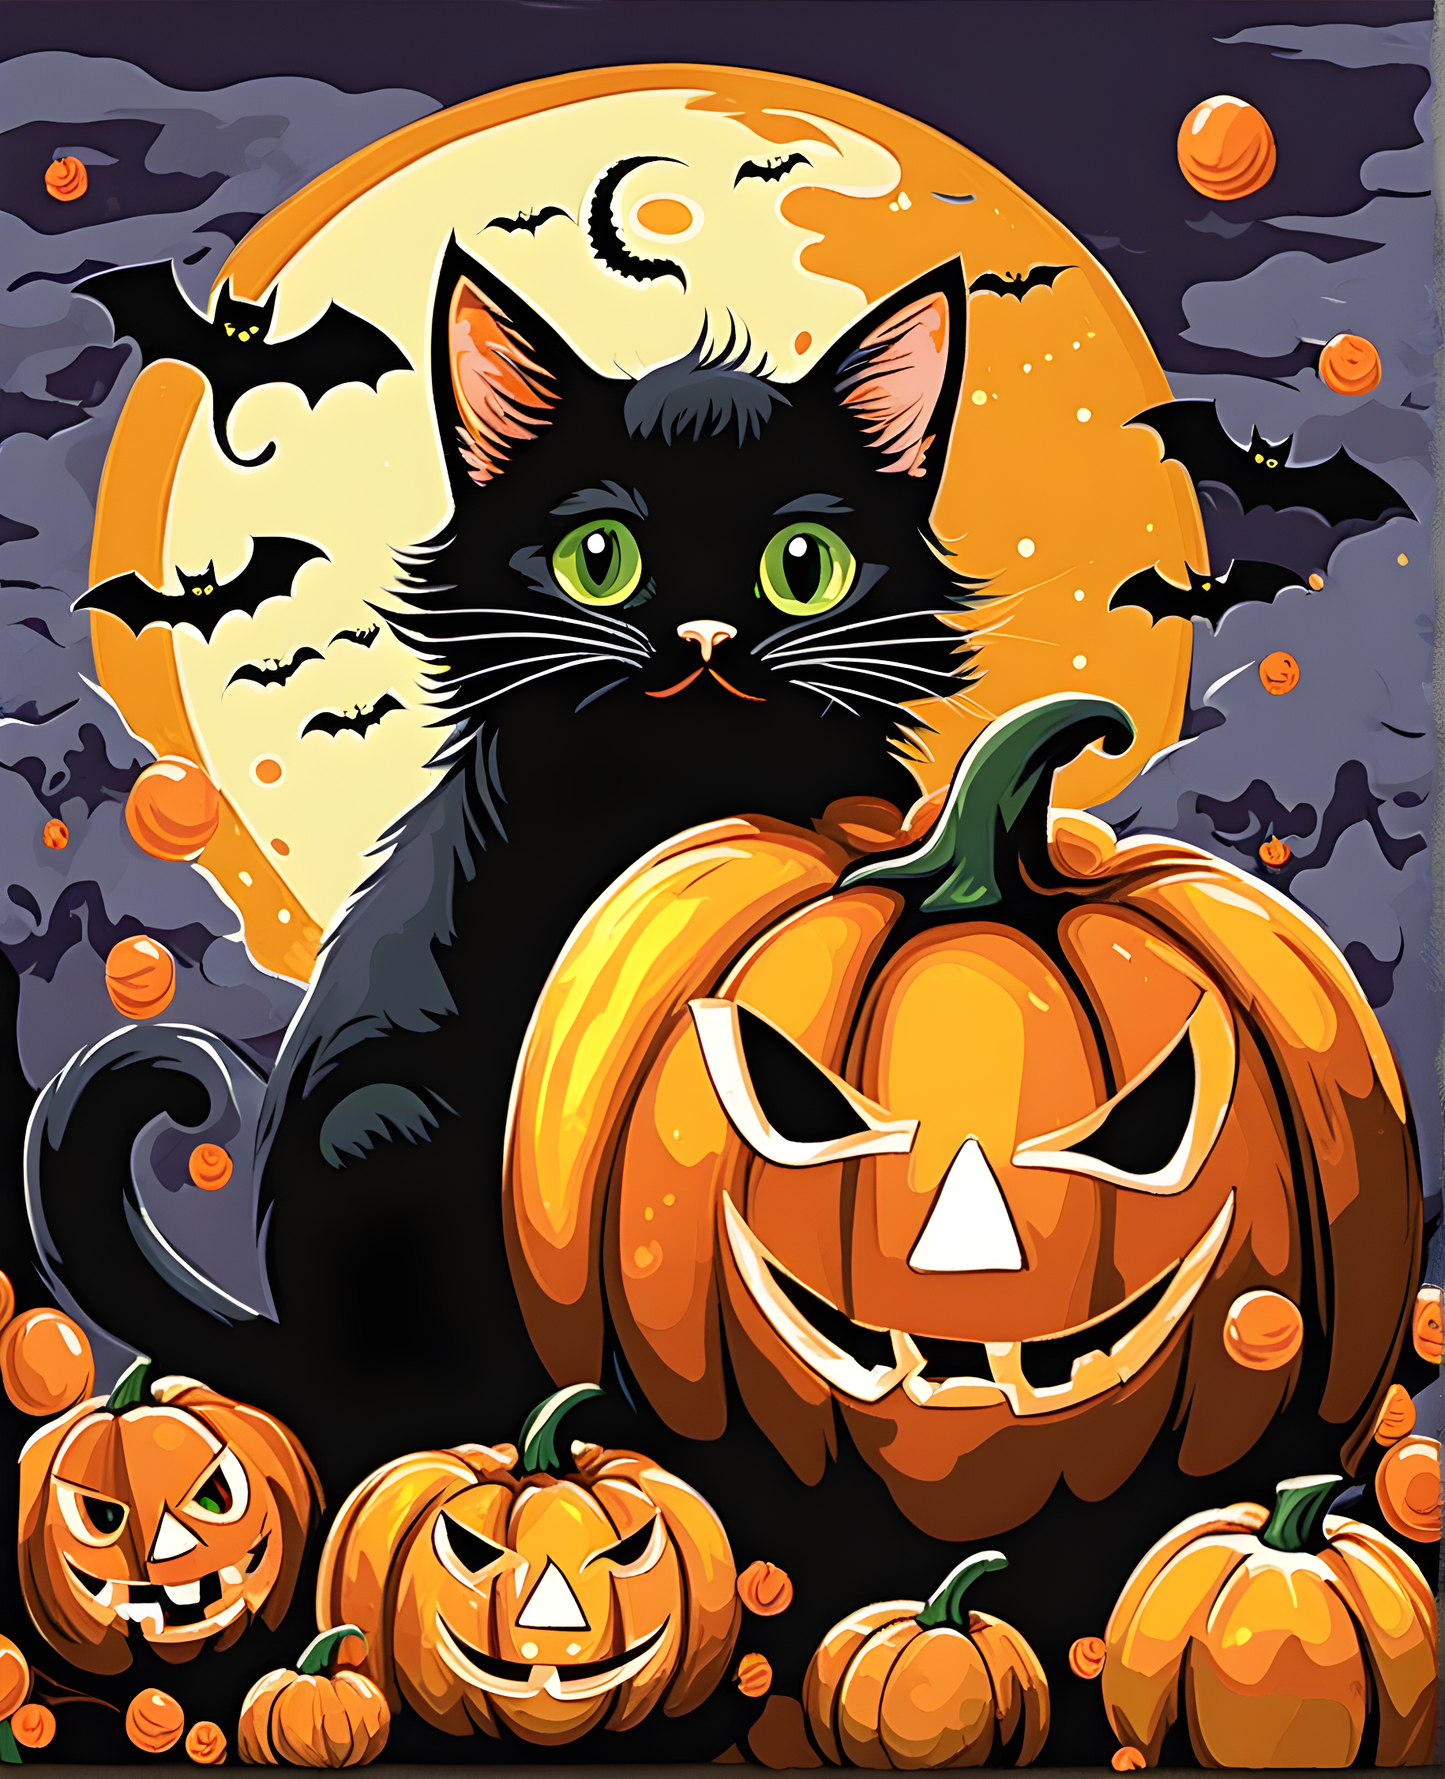 Halloween Cat (3) - Van-Go Paint-By-Number Kit